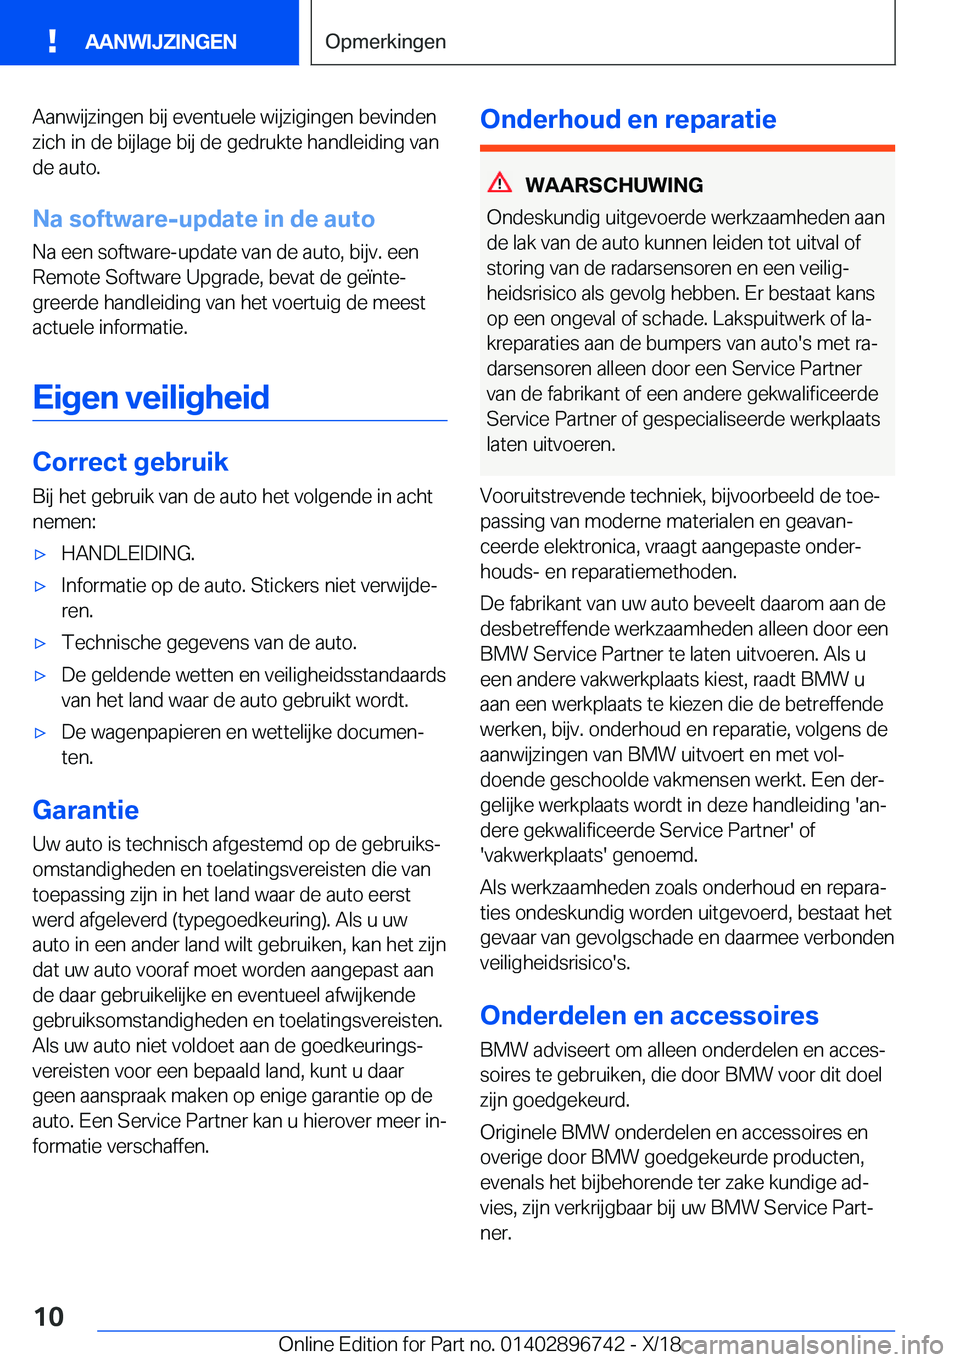 BMW X5 2019  Instructieboekjes (in Dutch) �A�a�n�w�i�j�z�i�n�g�e�n��b�i�j��e�v�e�n�t�u�e�l�e��w�i�j�z�i�g�i�n�g�e�n��b�e�v�i�n�d�e�n�z�i�c�h��i�n��d�e��b�i�j�l�a�g�e��b�i�j��d�e��g�e�d�r�u�k�t�e��h�a�n�d�l�e�i�d�i�n�g��v�a�n
�d�e�